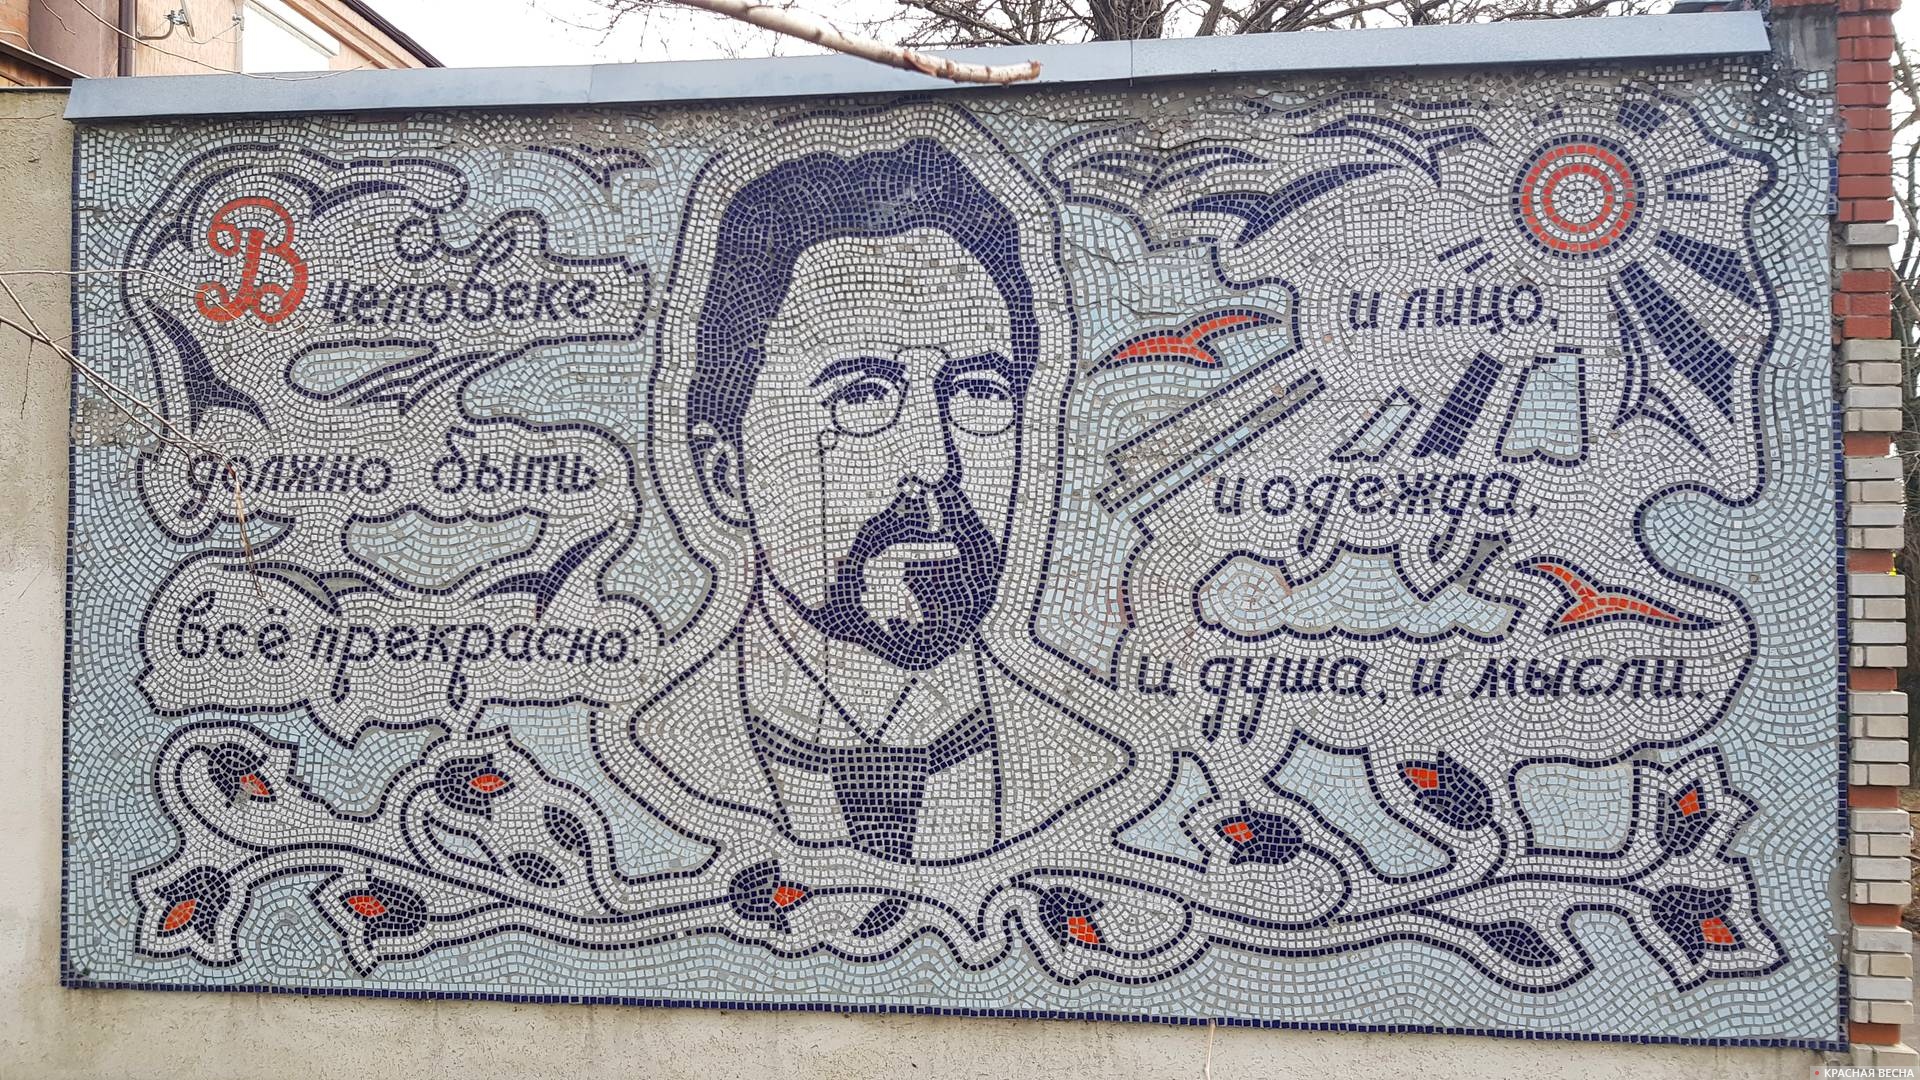 Мозаичное панно с портретом А. П. Чехова, Таганрог